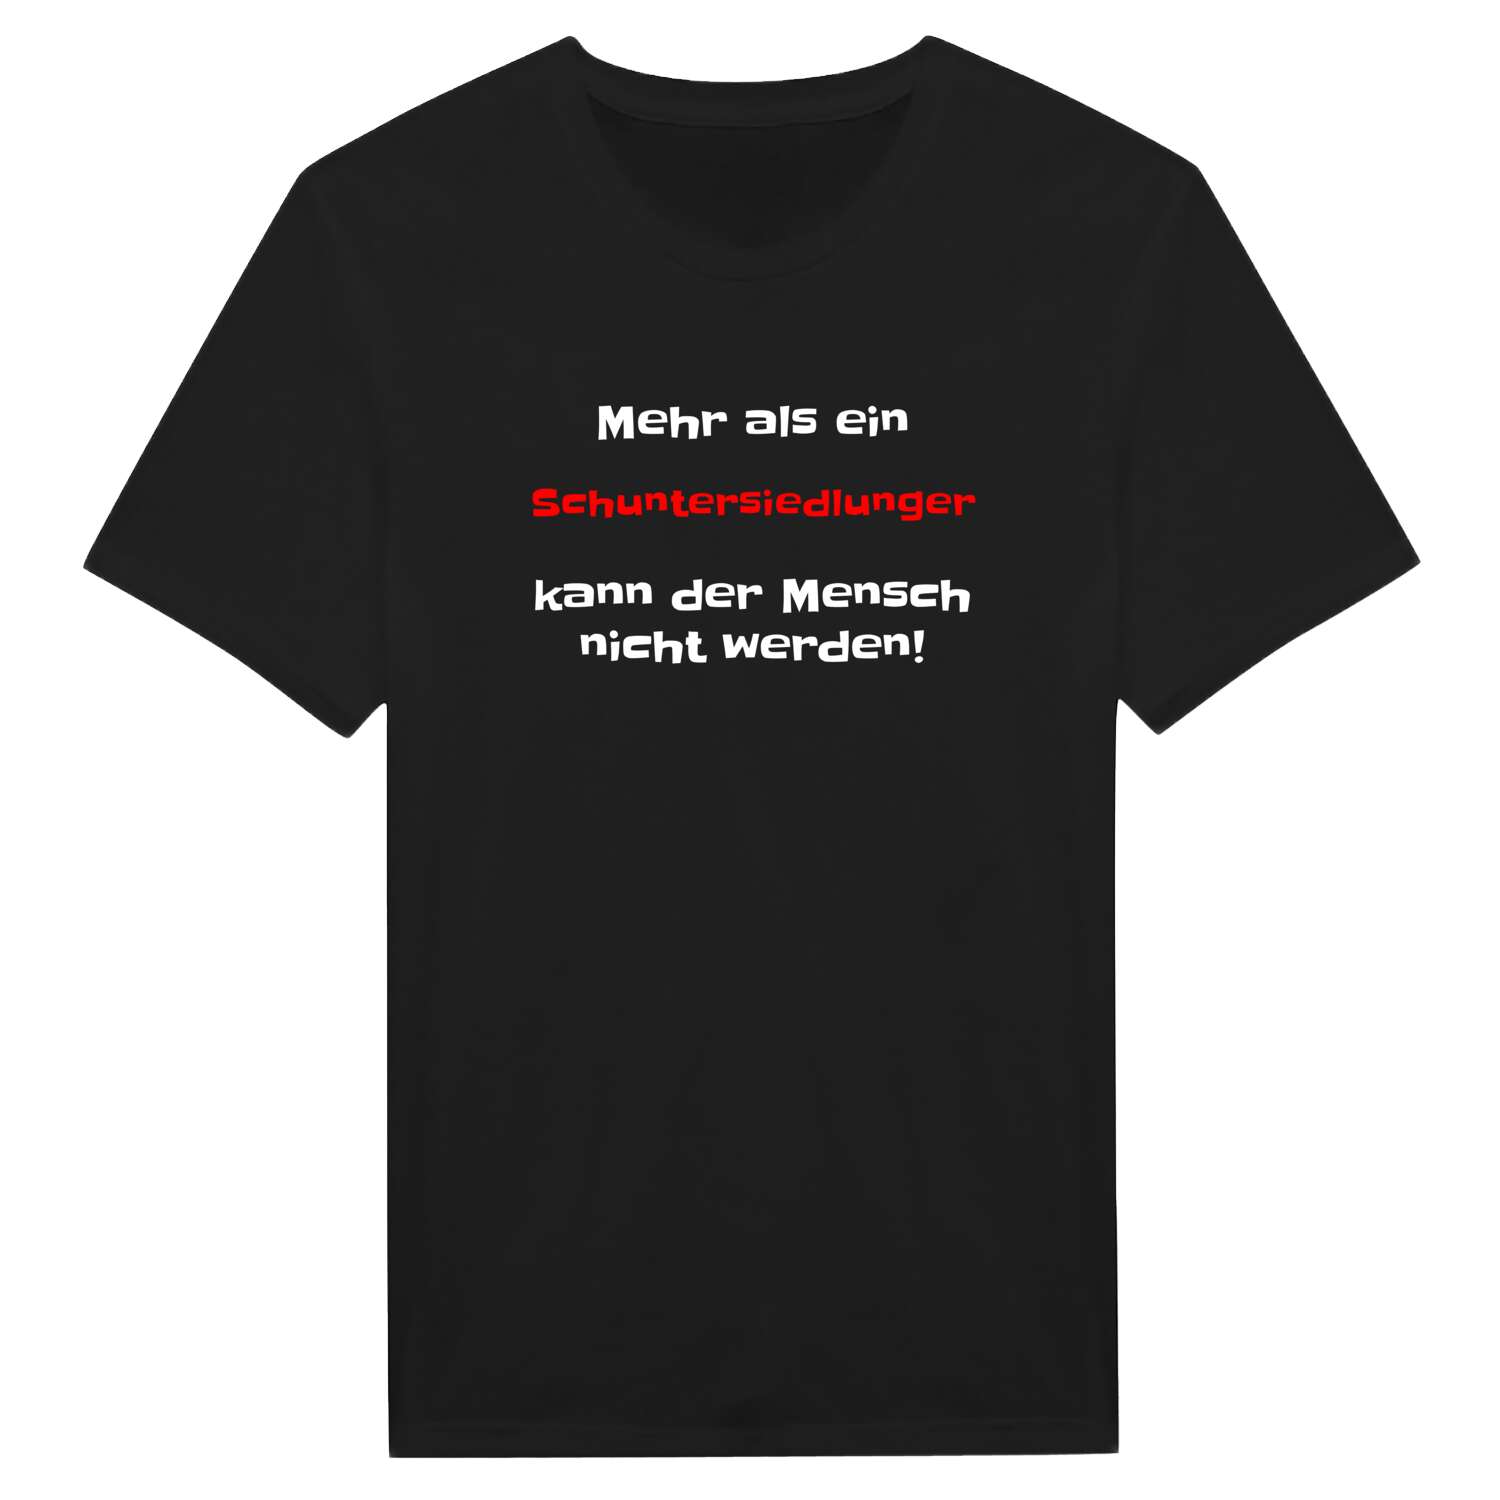 Schuntersiedlung T-Shirt »Mehr als ein«